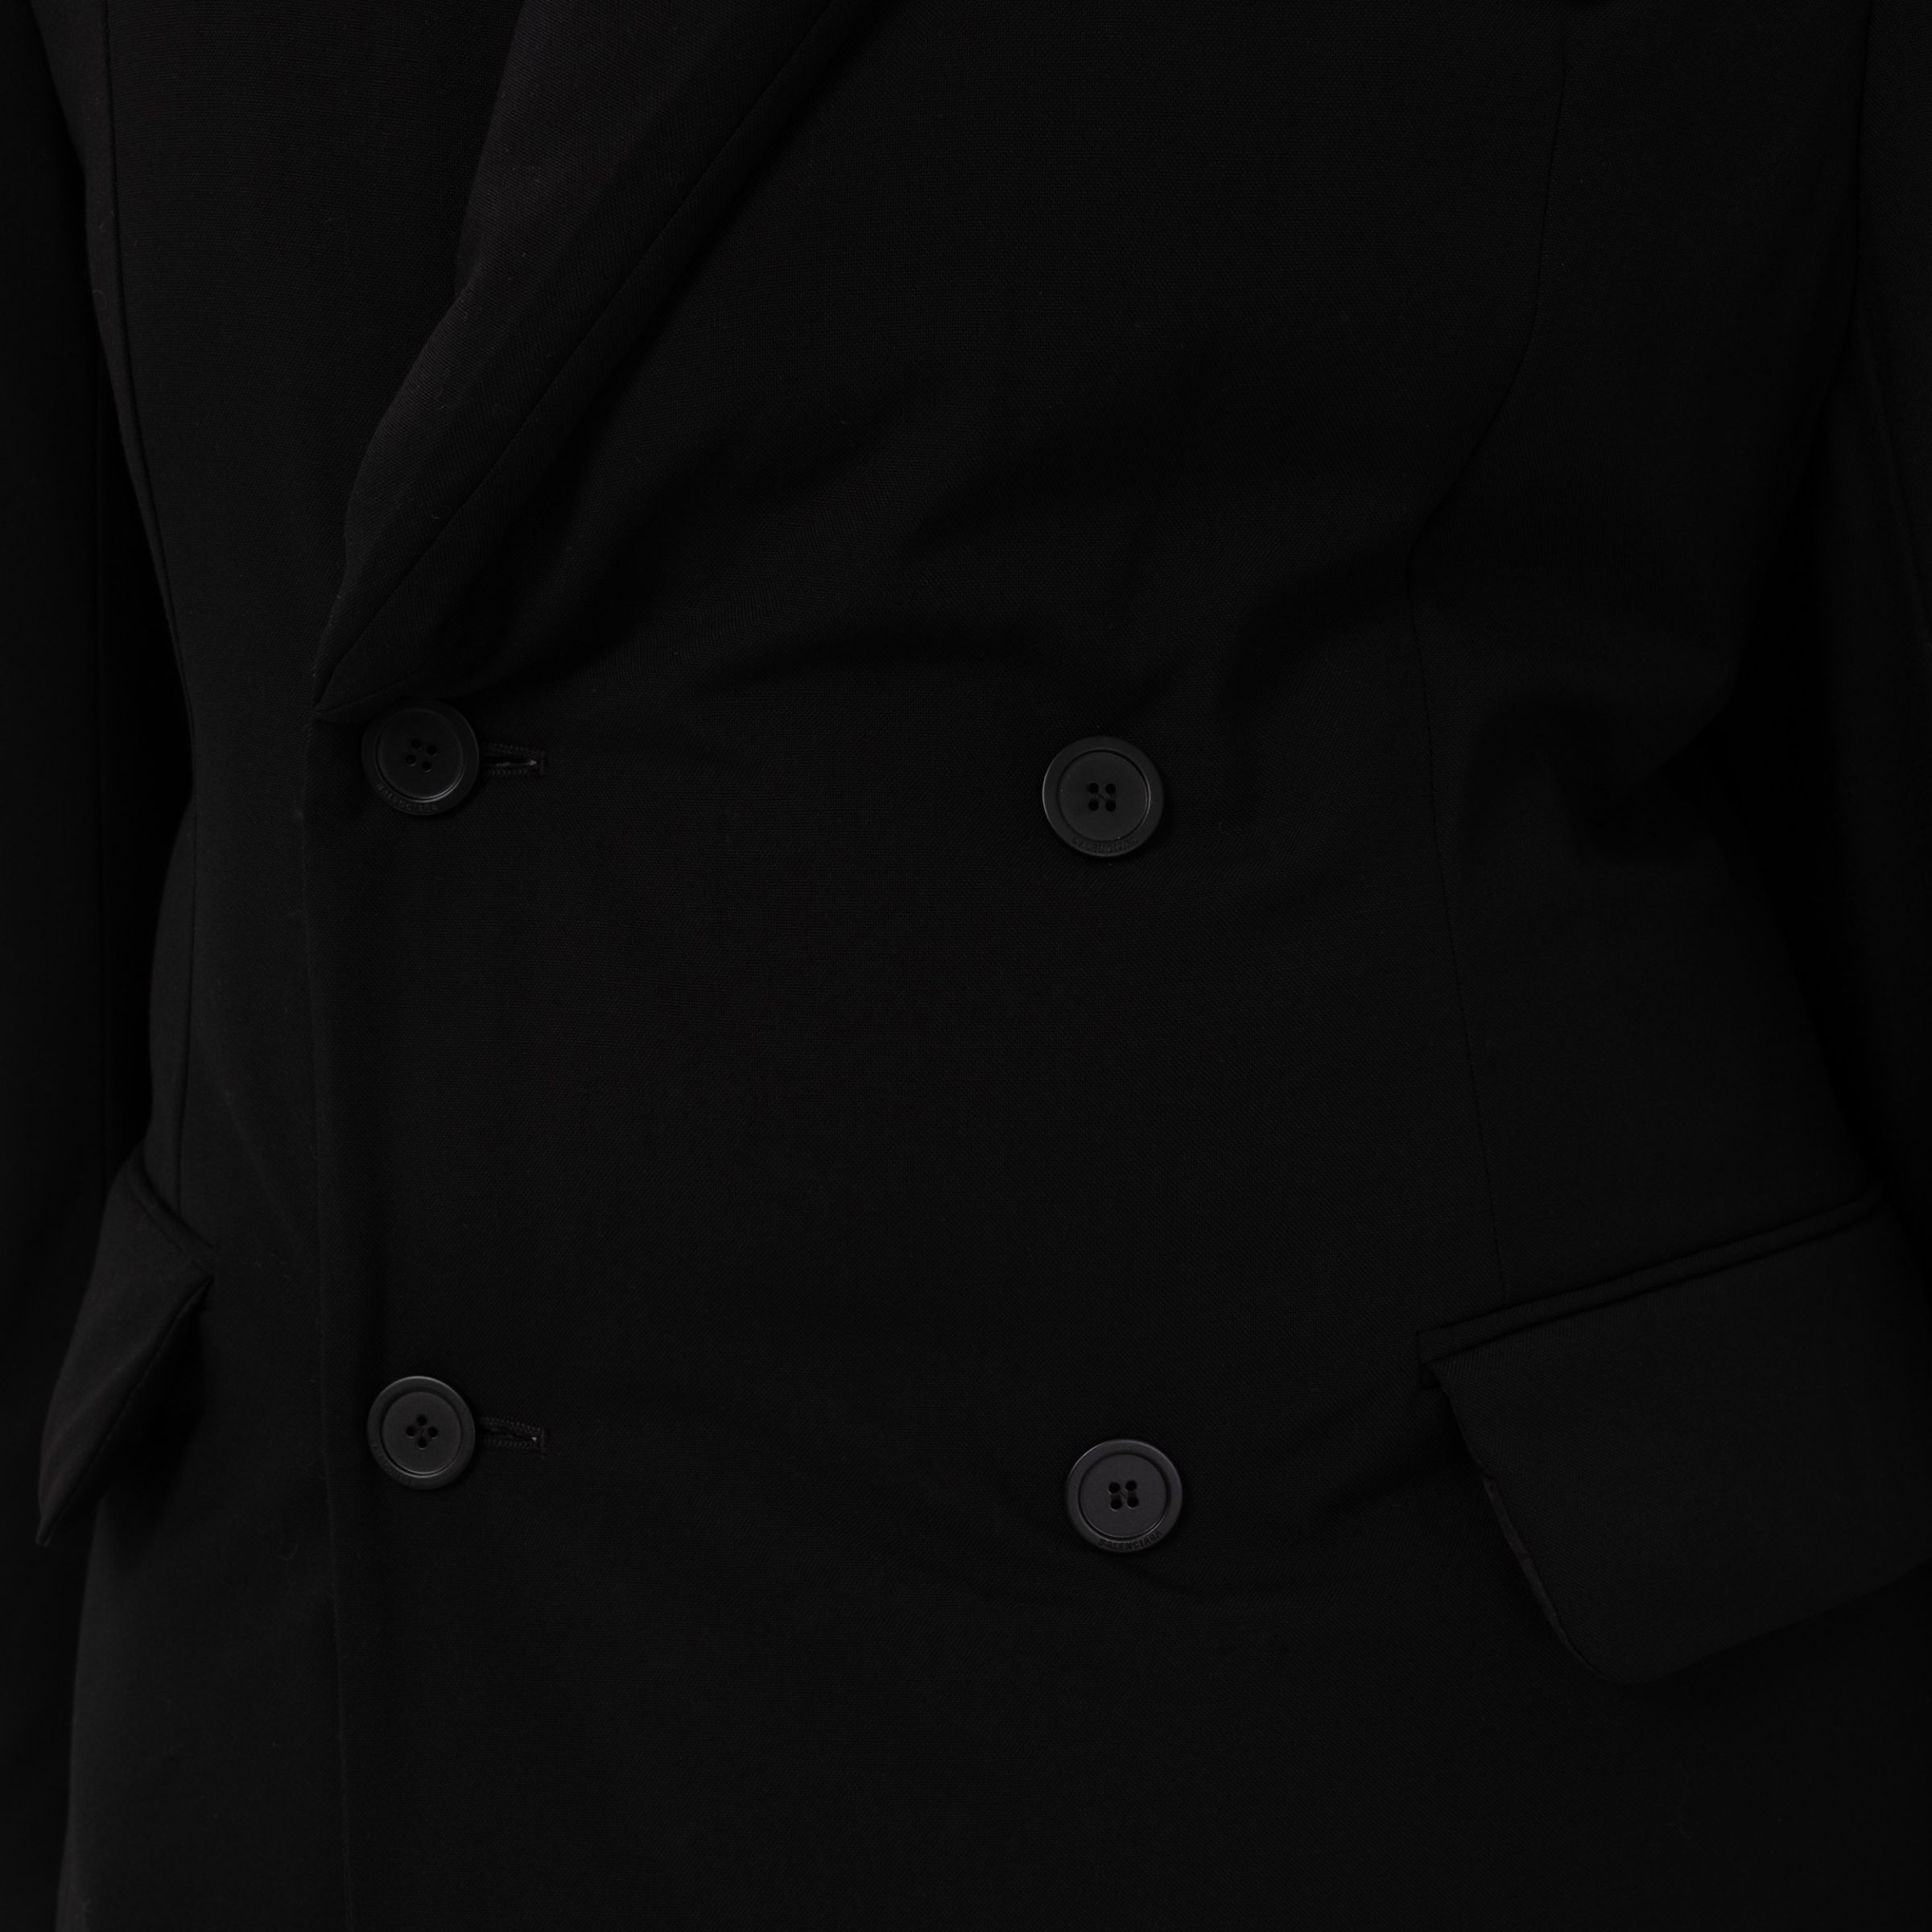 Пиджак Balenciaga черный